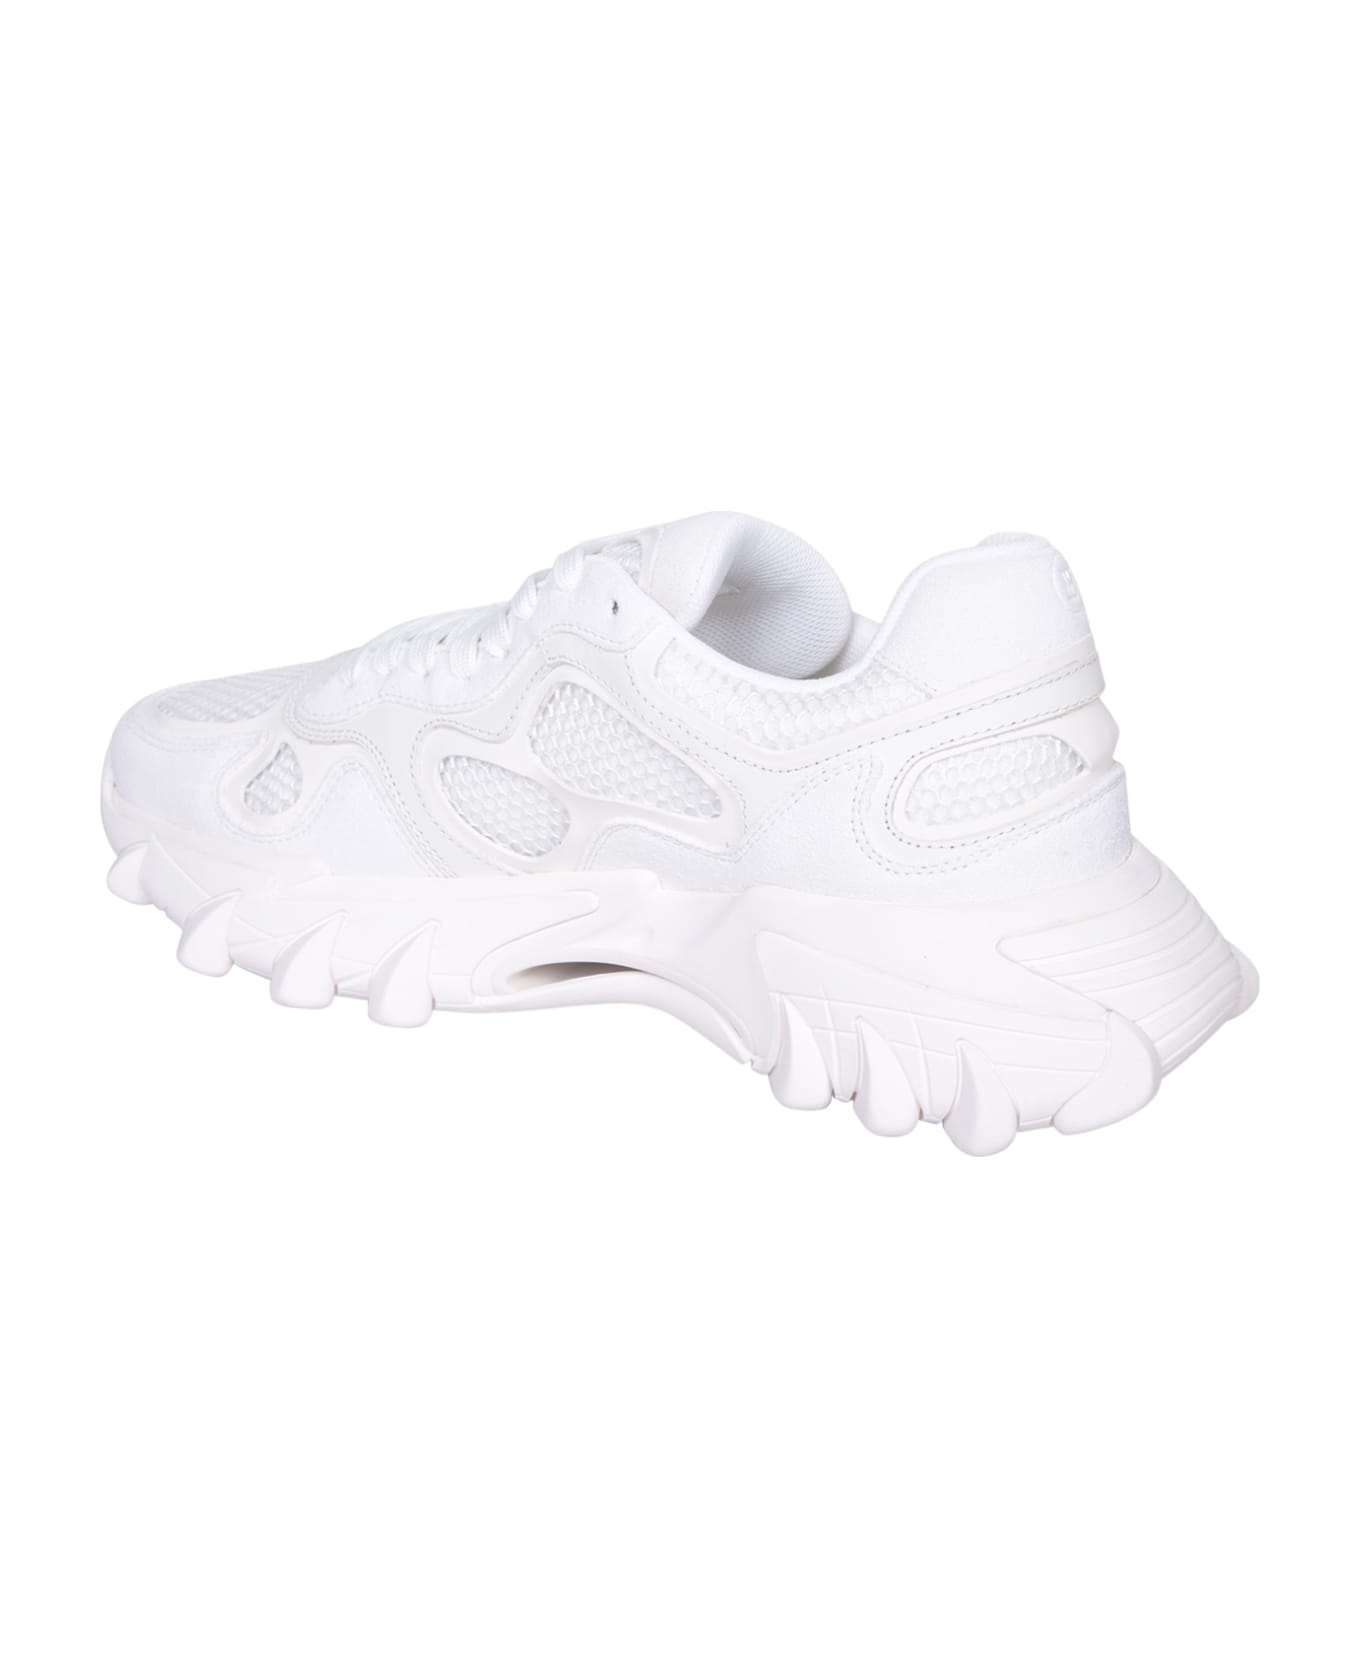 Balmain B East White Sneakers - White